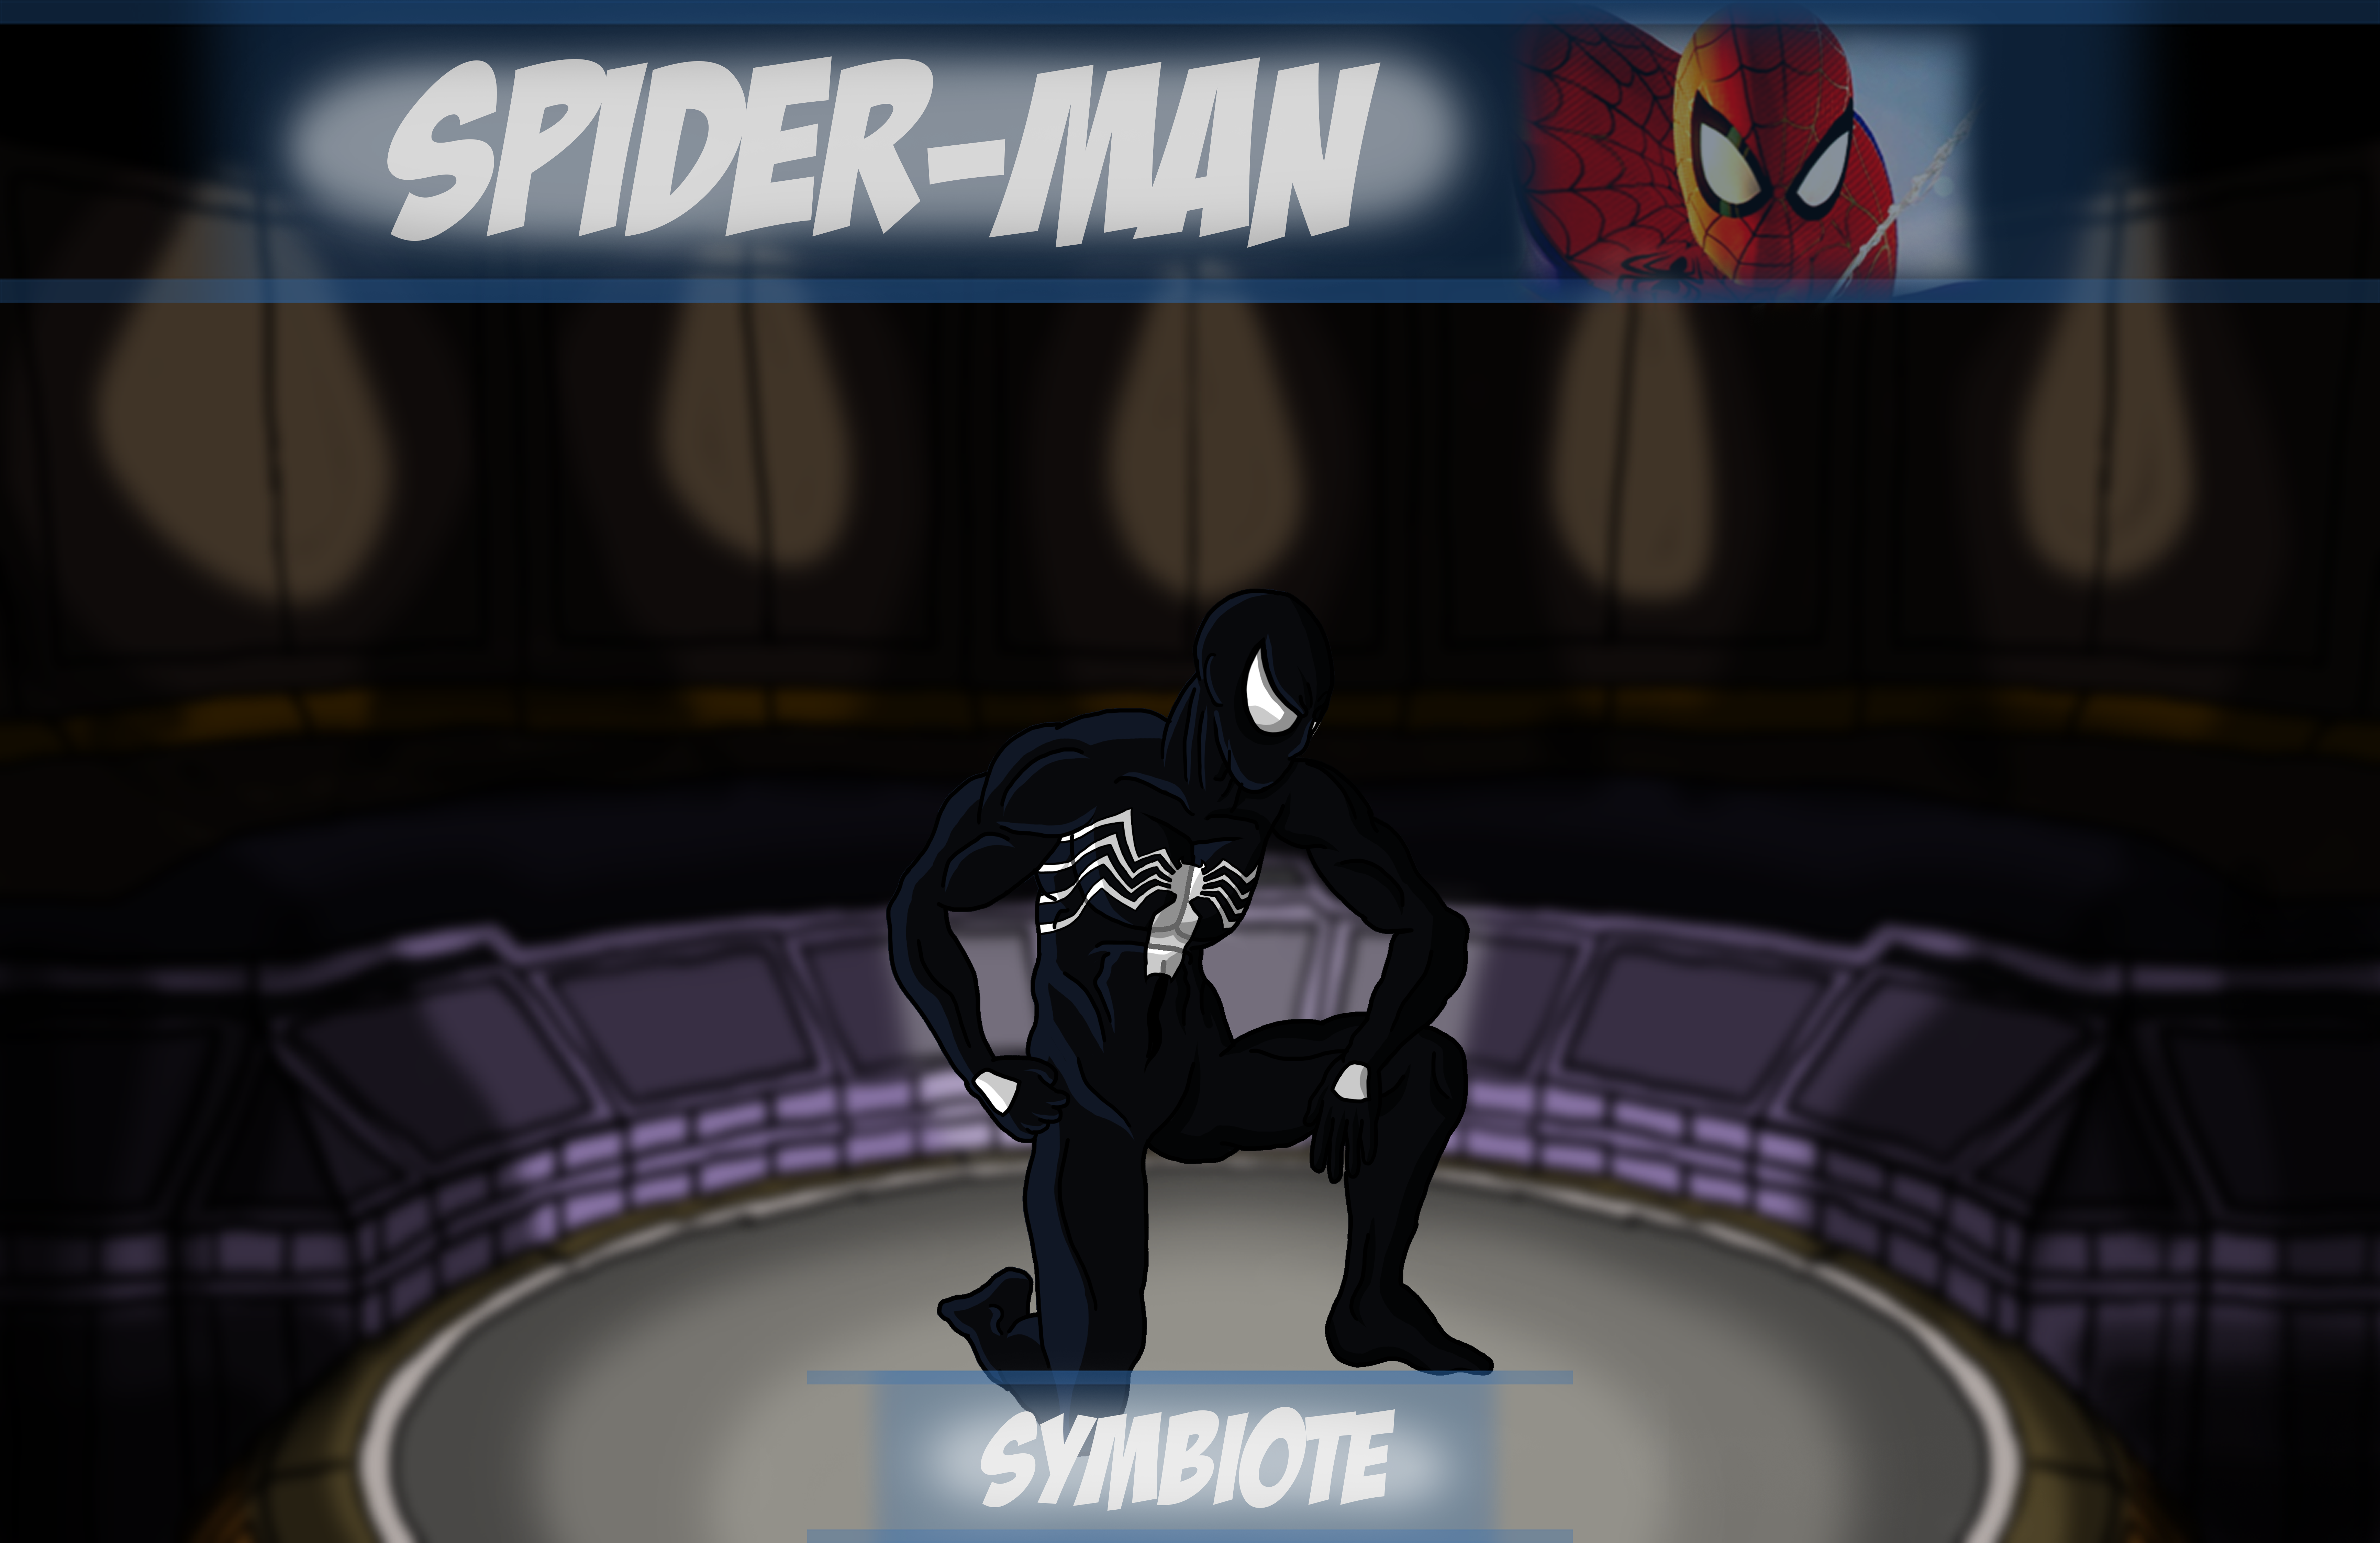 Ultimate Alliance: Spider-Man - Symbiote by ClanFortesque on DeviantArt